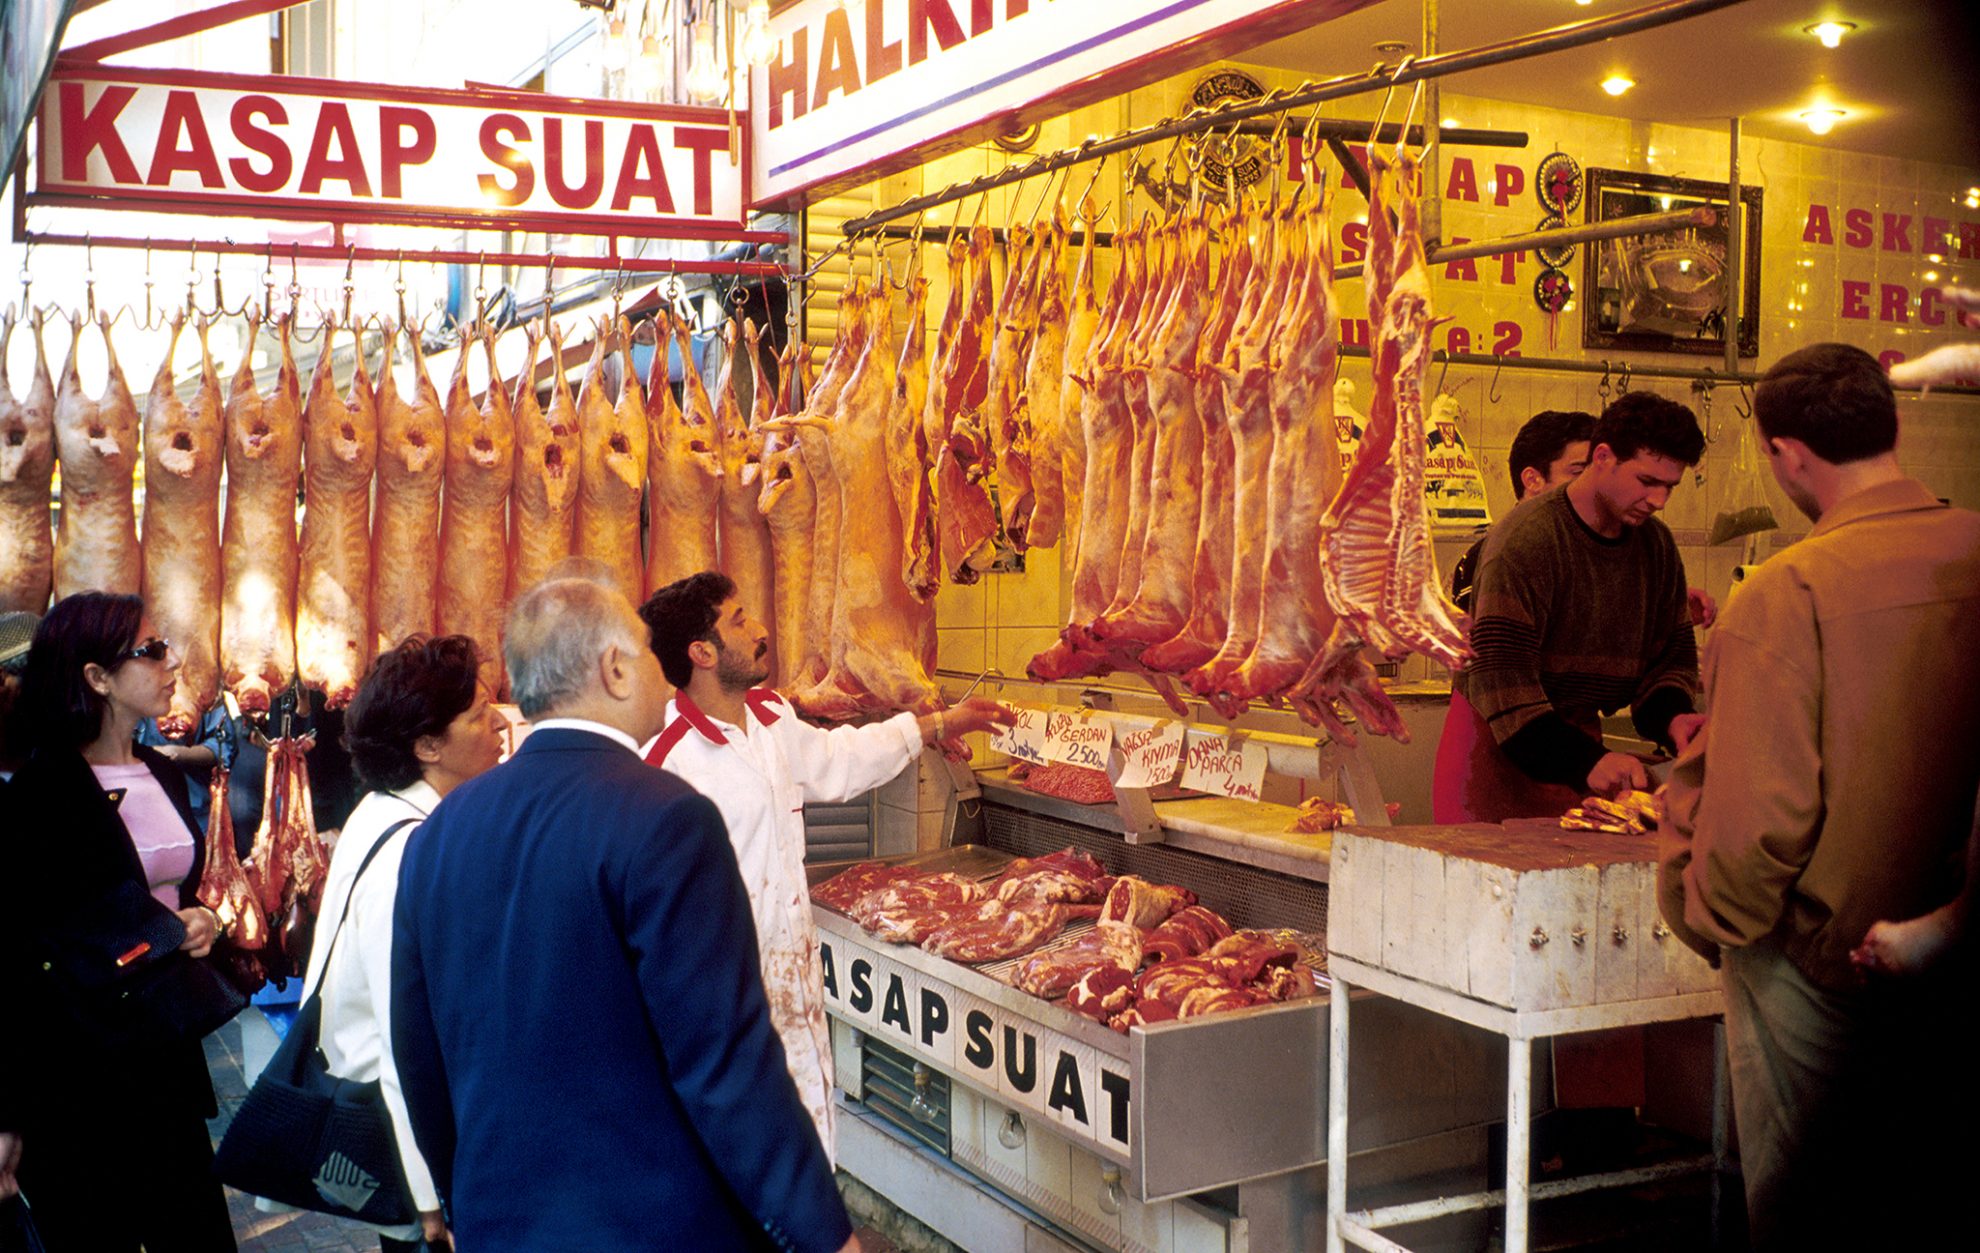 Iš Lietuvos jau vežama pagal islamo reikalavimus paskerstų gyvūnų – chalalinė – mėsa, tačiau gamintojai vis dar stovi ant savo didžiojo šanso slenksčio